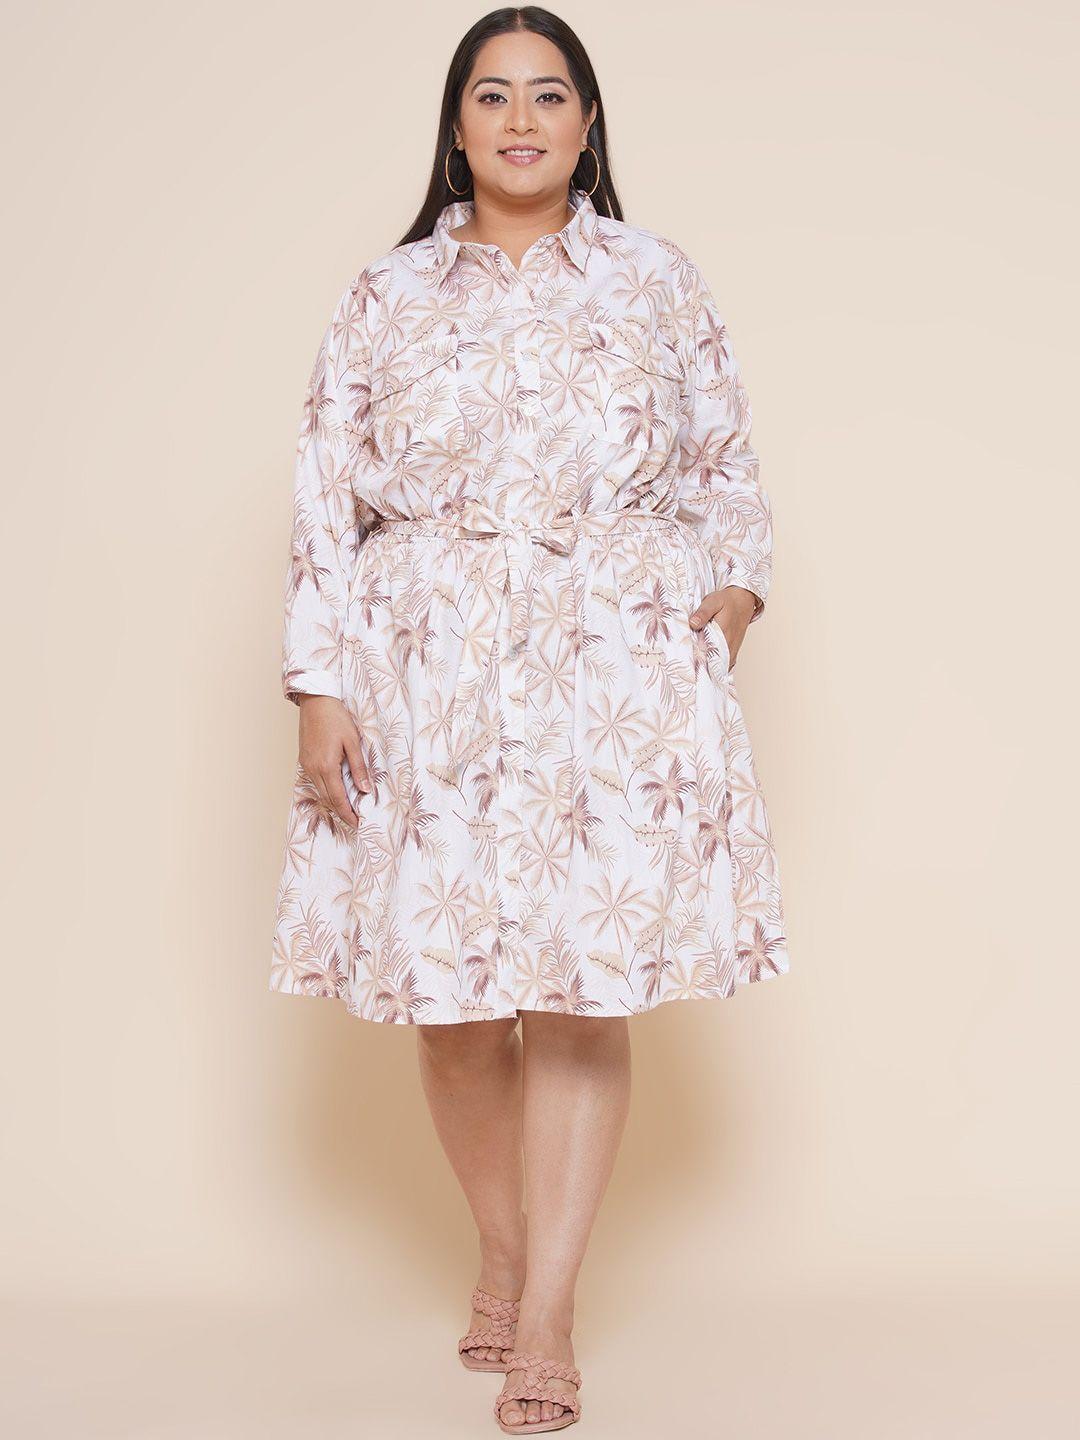 kiaahvi by john pride floral cotton shirt dress